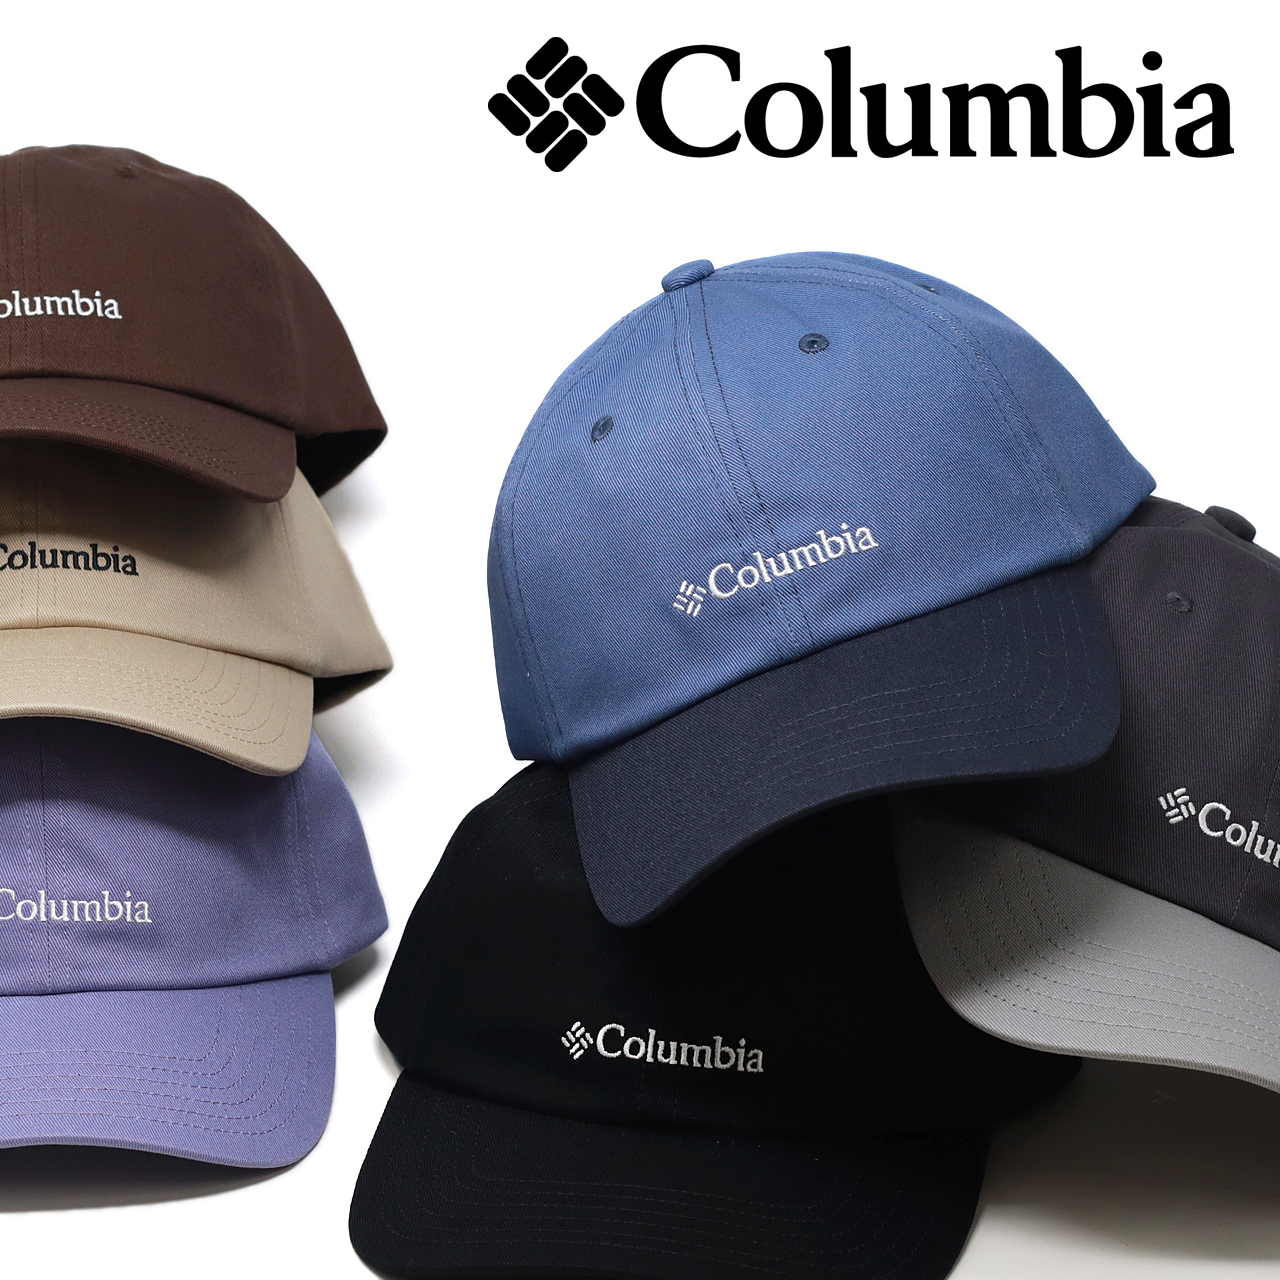 Columbia 帽子 キャップ メンズ コットンツイル サーモンパスキャップ